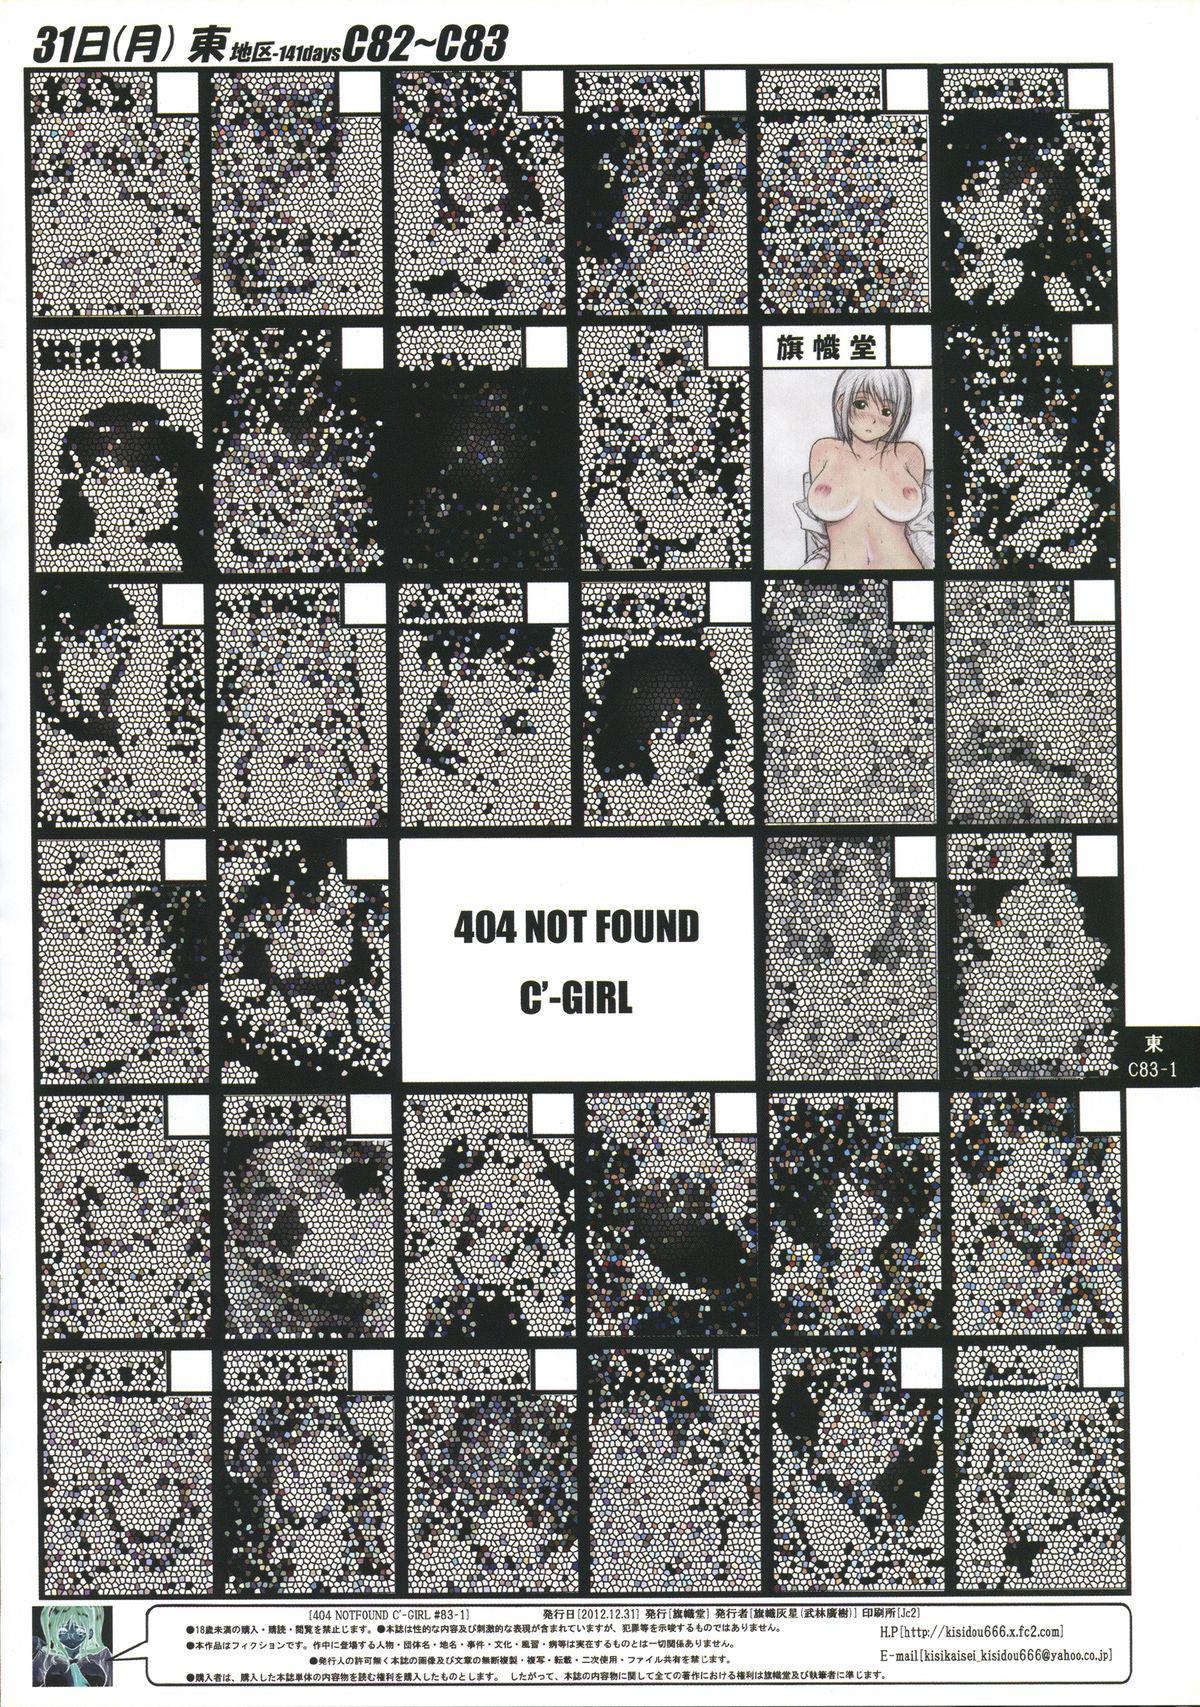 Hardcore Porn (C83) [Kisidou (Takebayasi Hiroki, Kishi Kasei)] 404 NOT FOUND C'-GIRL #83-1 [English] =SNP= Hardcore Porn Free - Picture 2